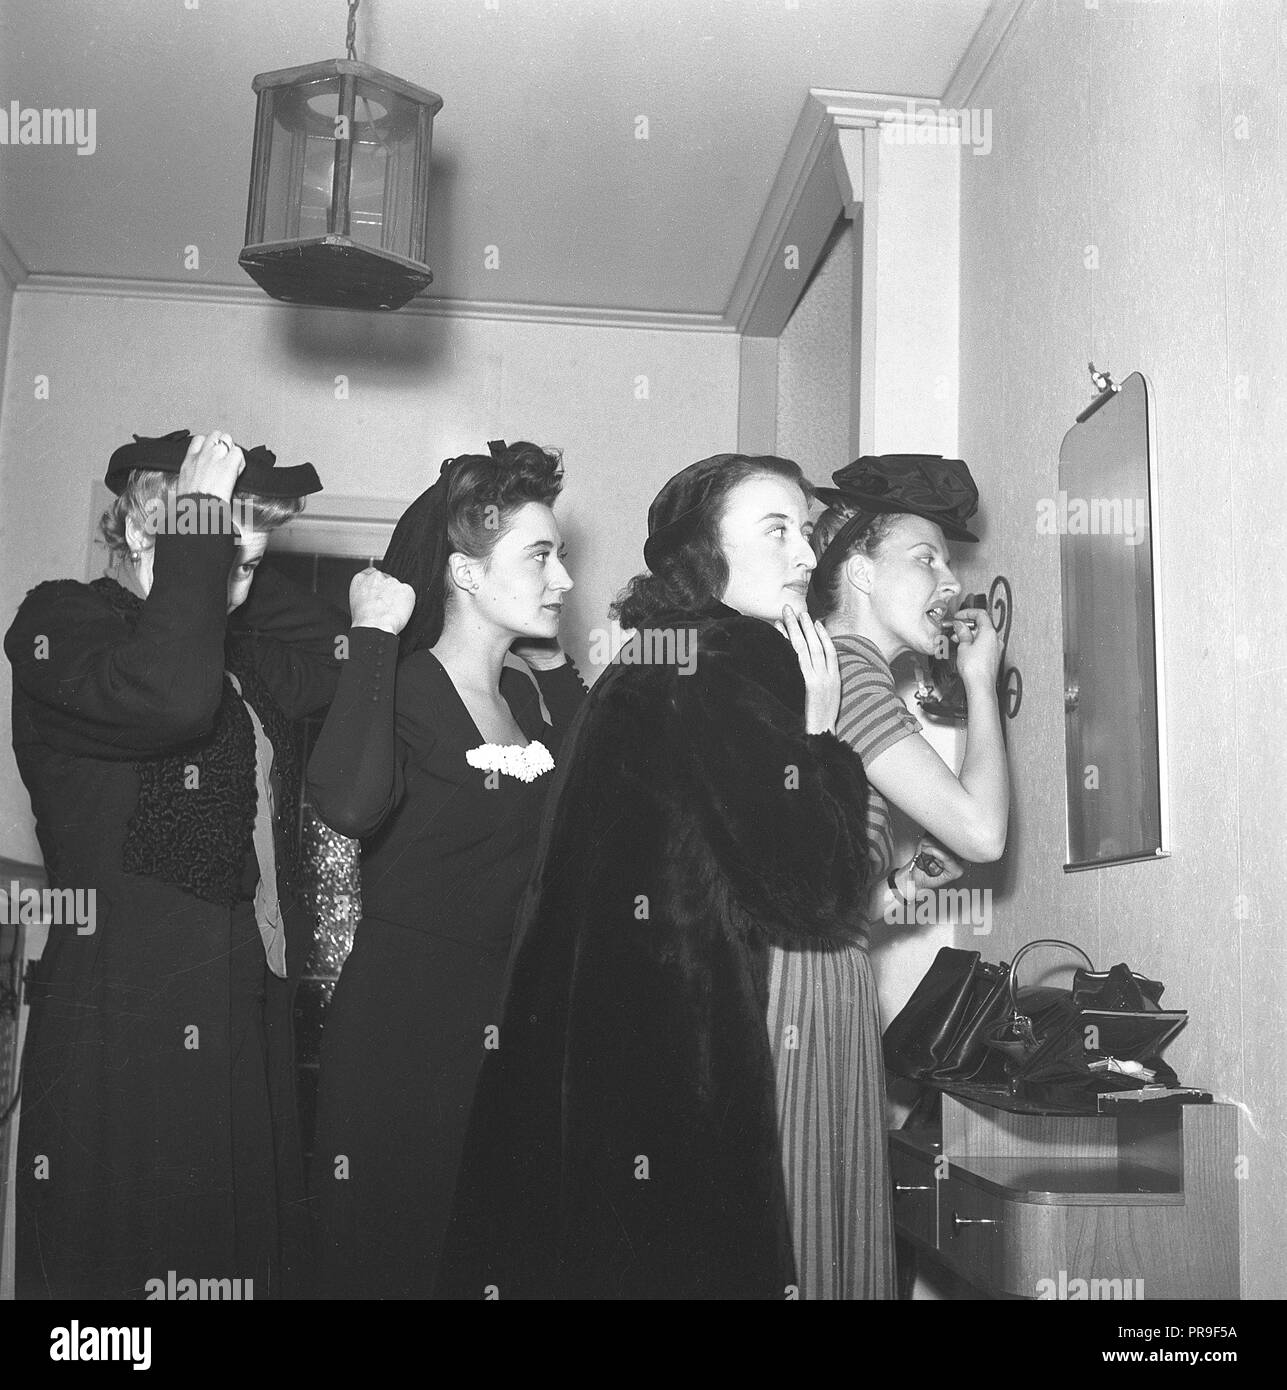 Le donne si prepara per una notte fuori nel 1940s. Il gruppo di quattro donne stanno rendendo il tocco finale per i loro capelli e vestiti e il trucco. Essi sono tutti cercando di ottenere un assaggio di sé nel piccolo specchio sulla parete. La Svezia 1944. Foto Kristoffersson ref M93-6 Foto Stock